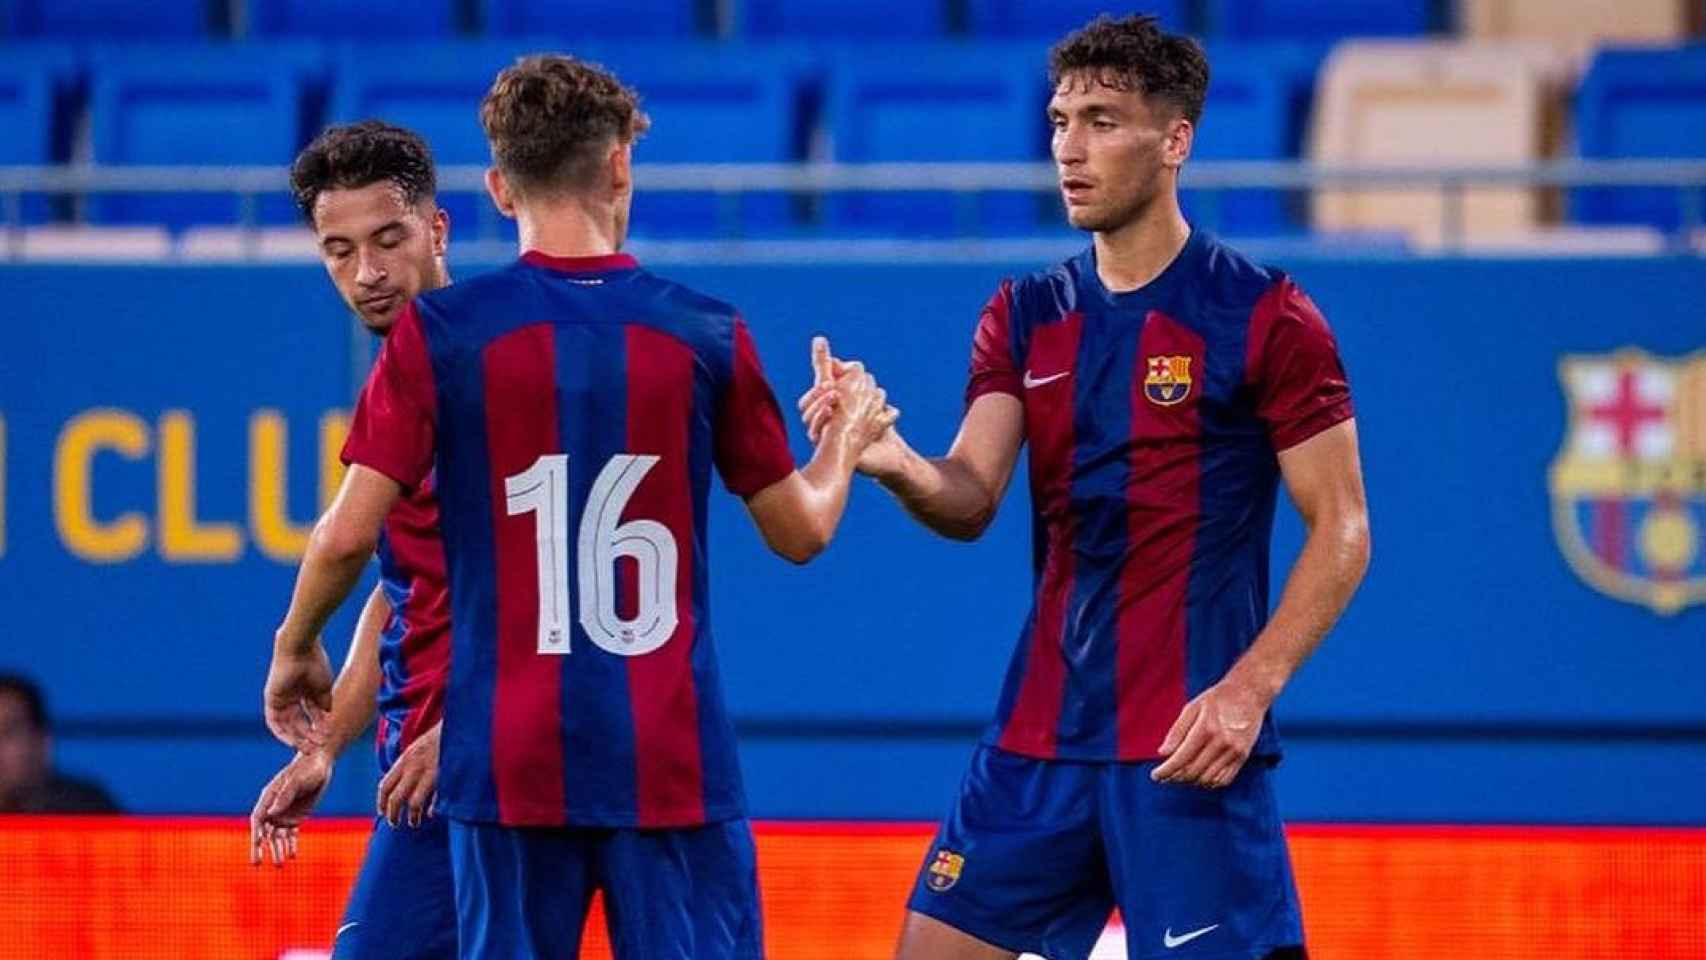 Diego Percan marca su primer gol como jugador del Barça B ante el Lleida